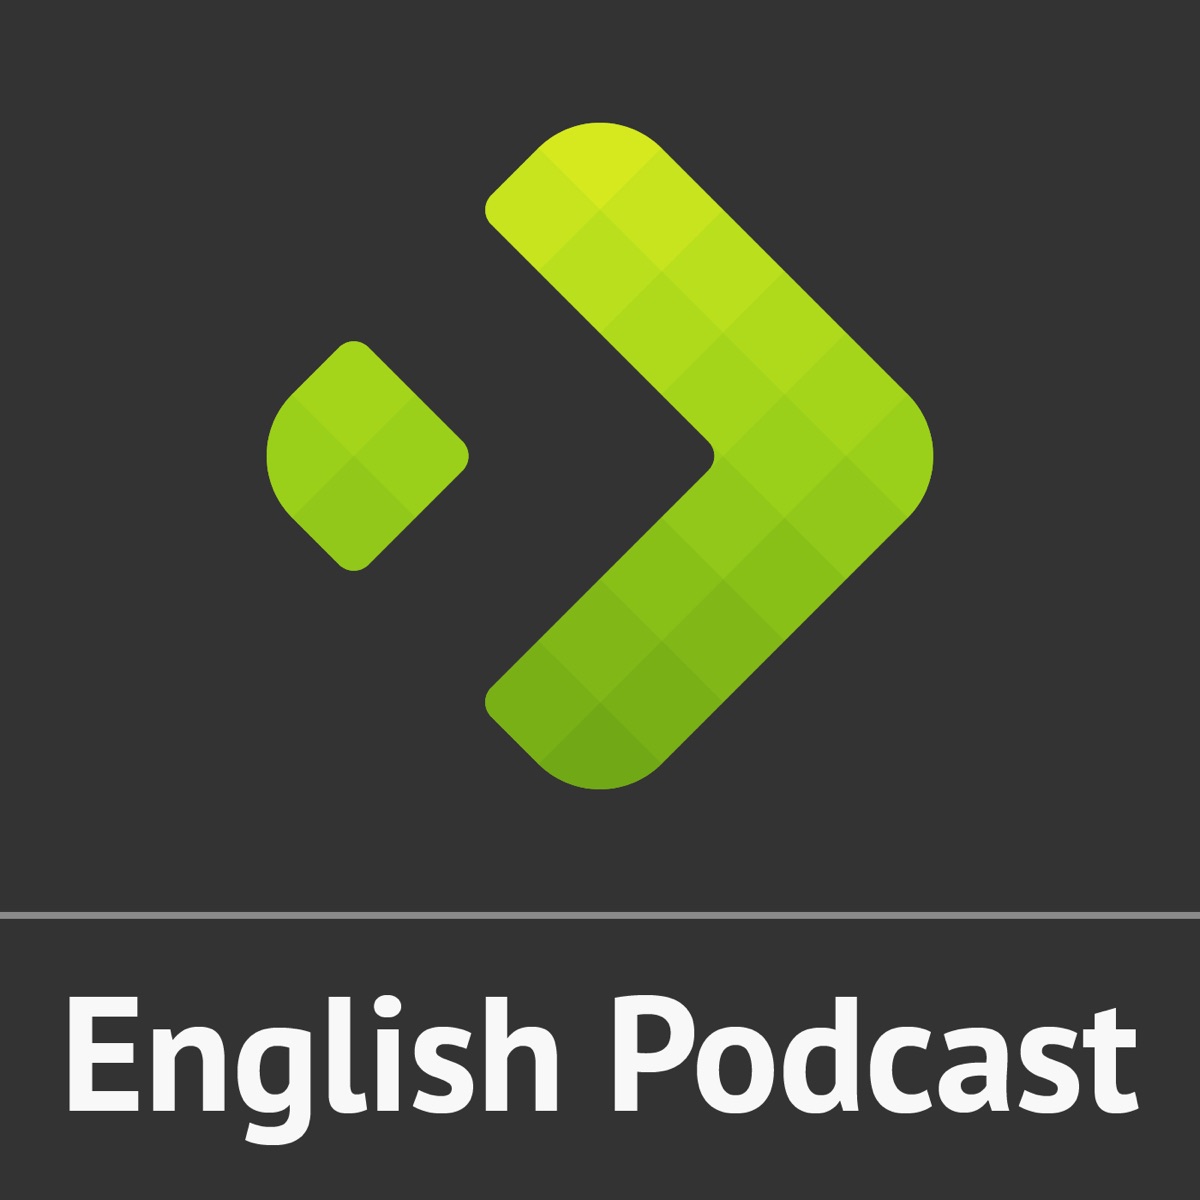 Donay Mendonça o moderador - English Podcast #52 - English Experts